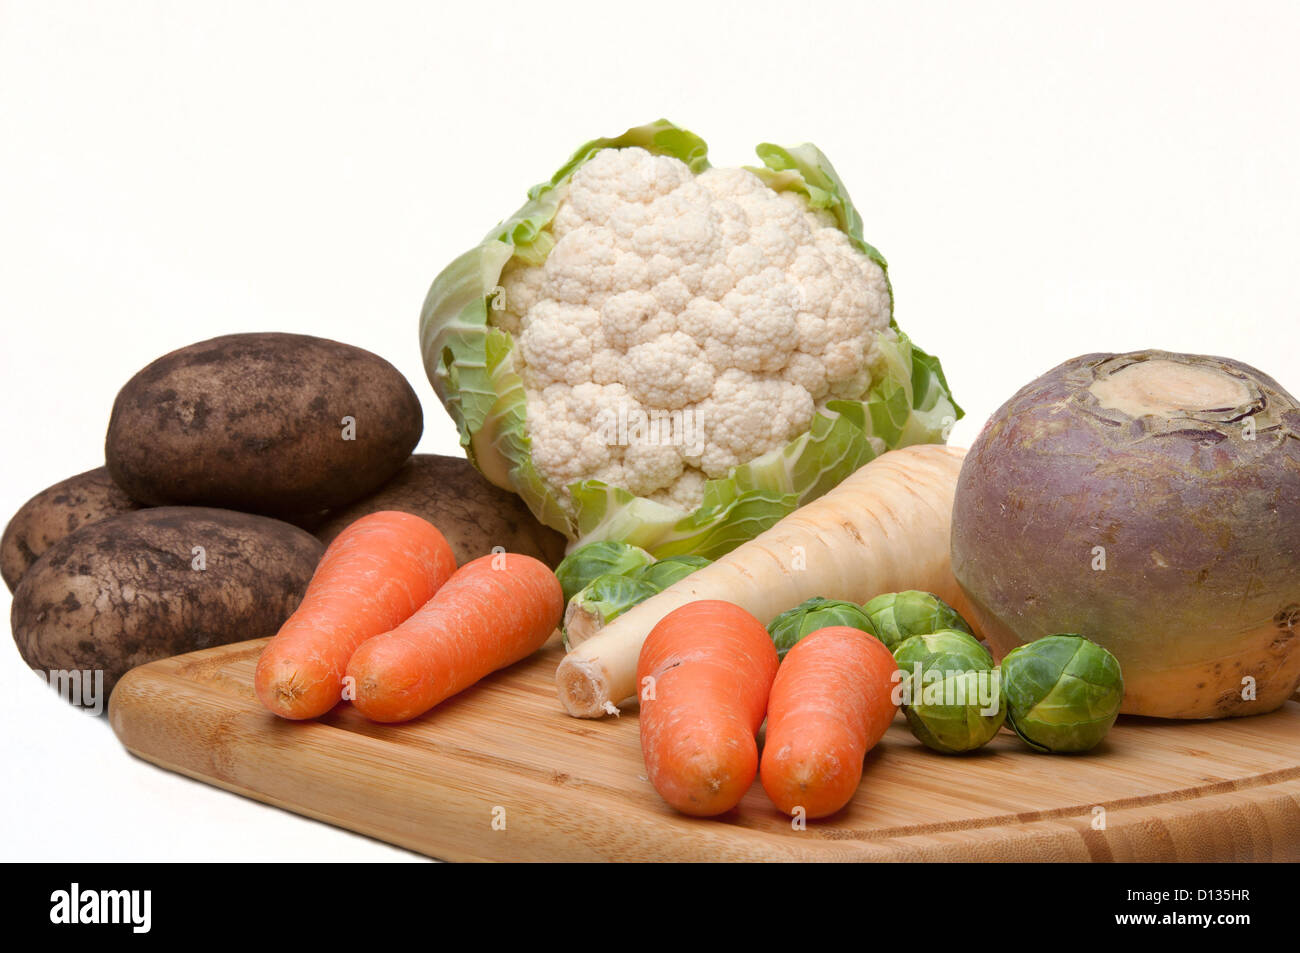 Una selección de hortalizas de invierno incluyendo sueco,alcachofa,zanahorias, Brussel, patatas y coliflor sobre un fondo blanco. Foto de stock